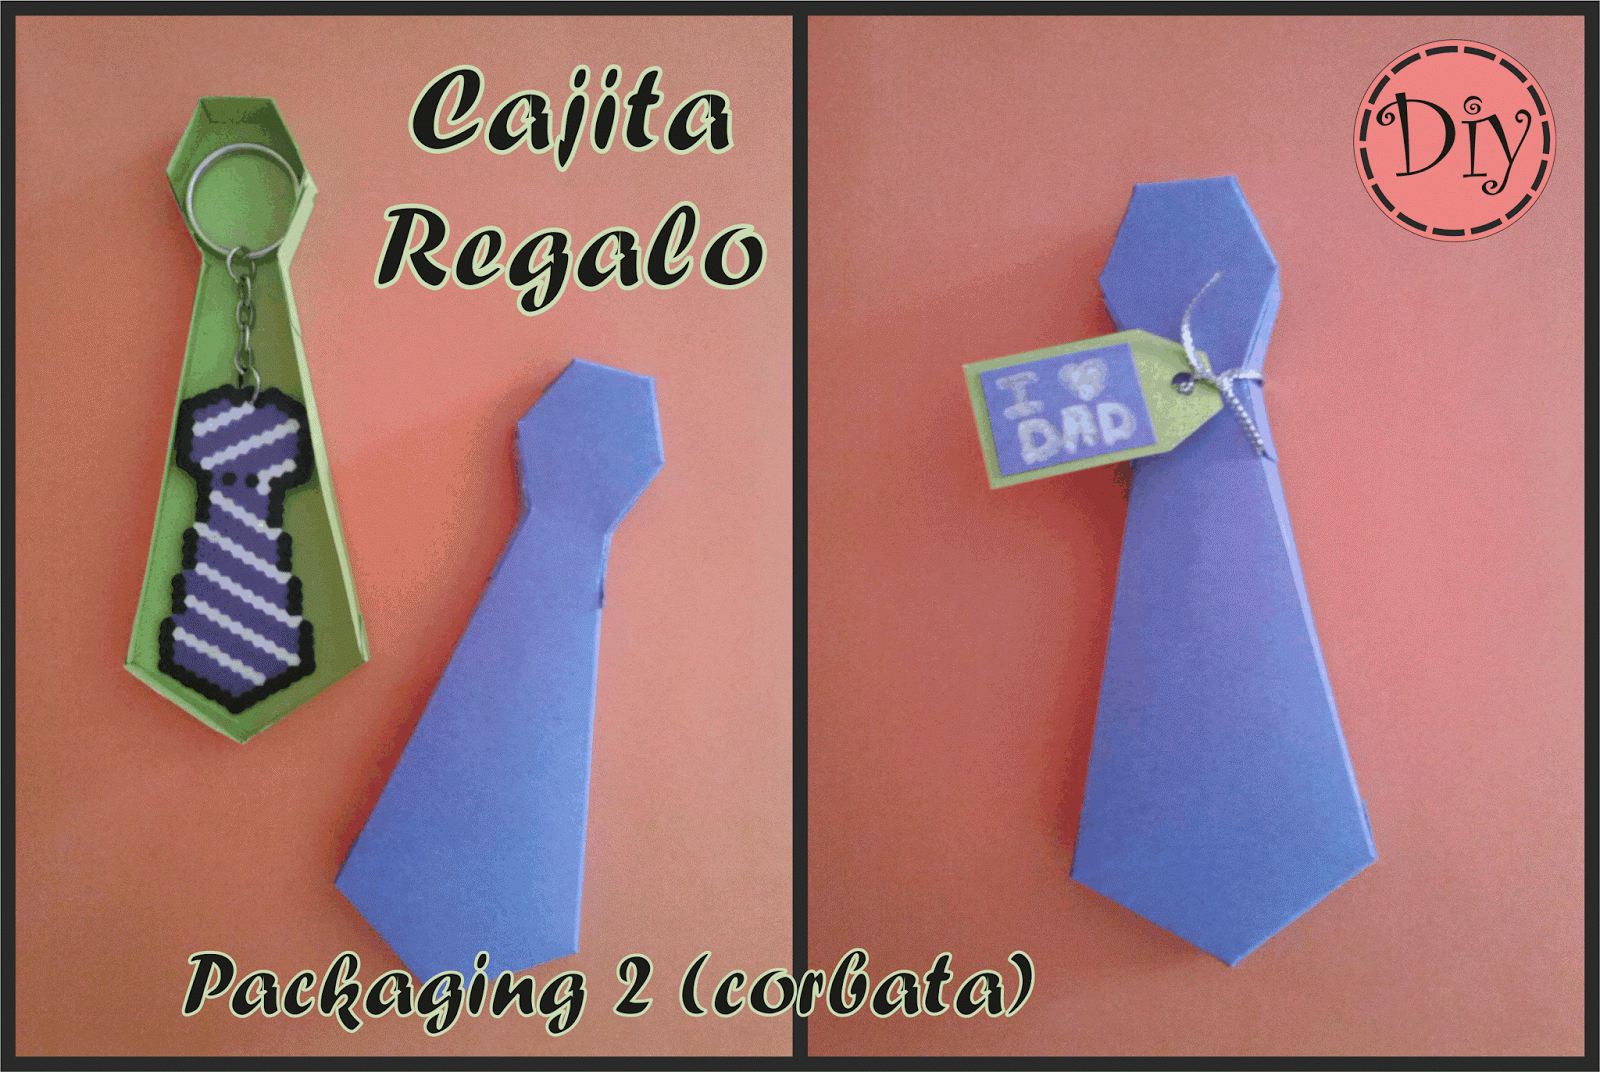 Diy: Diy Cajita Regalo - Packaging 2 (corbata)